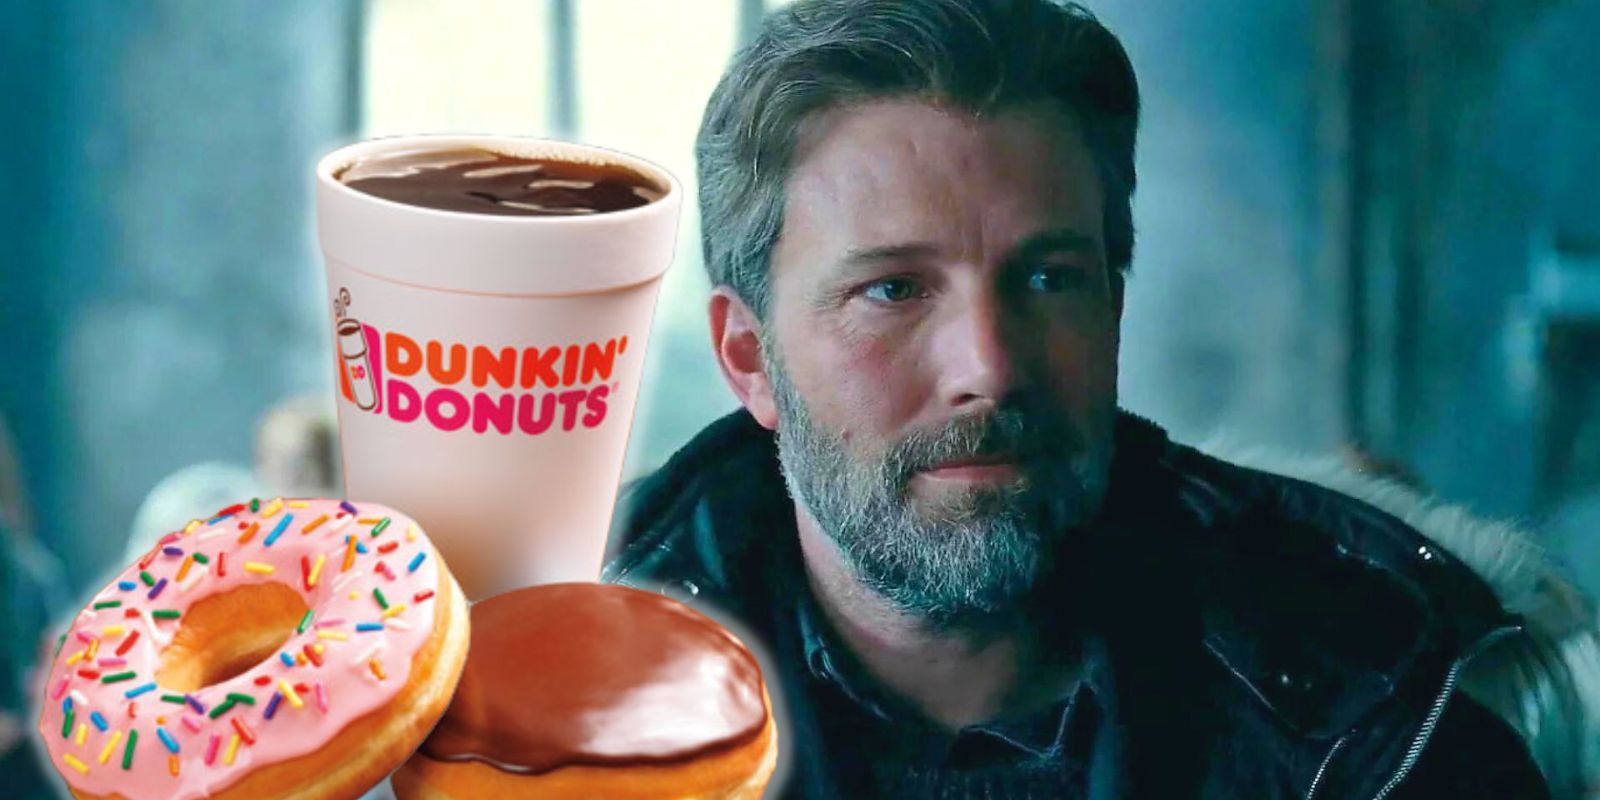 Fans Spot Ben Affleck Working At A Dunkin Donuts